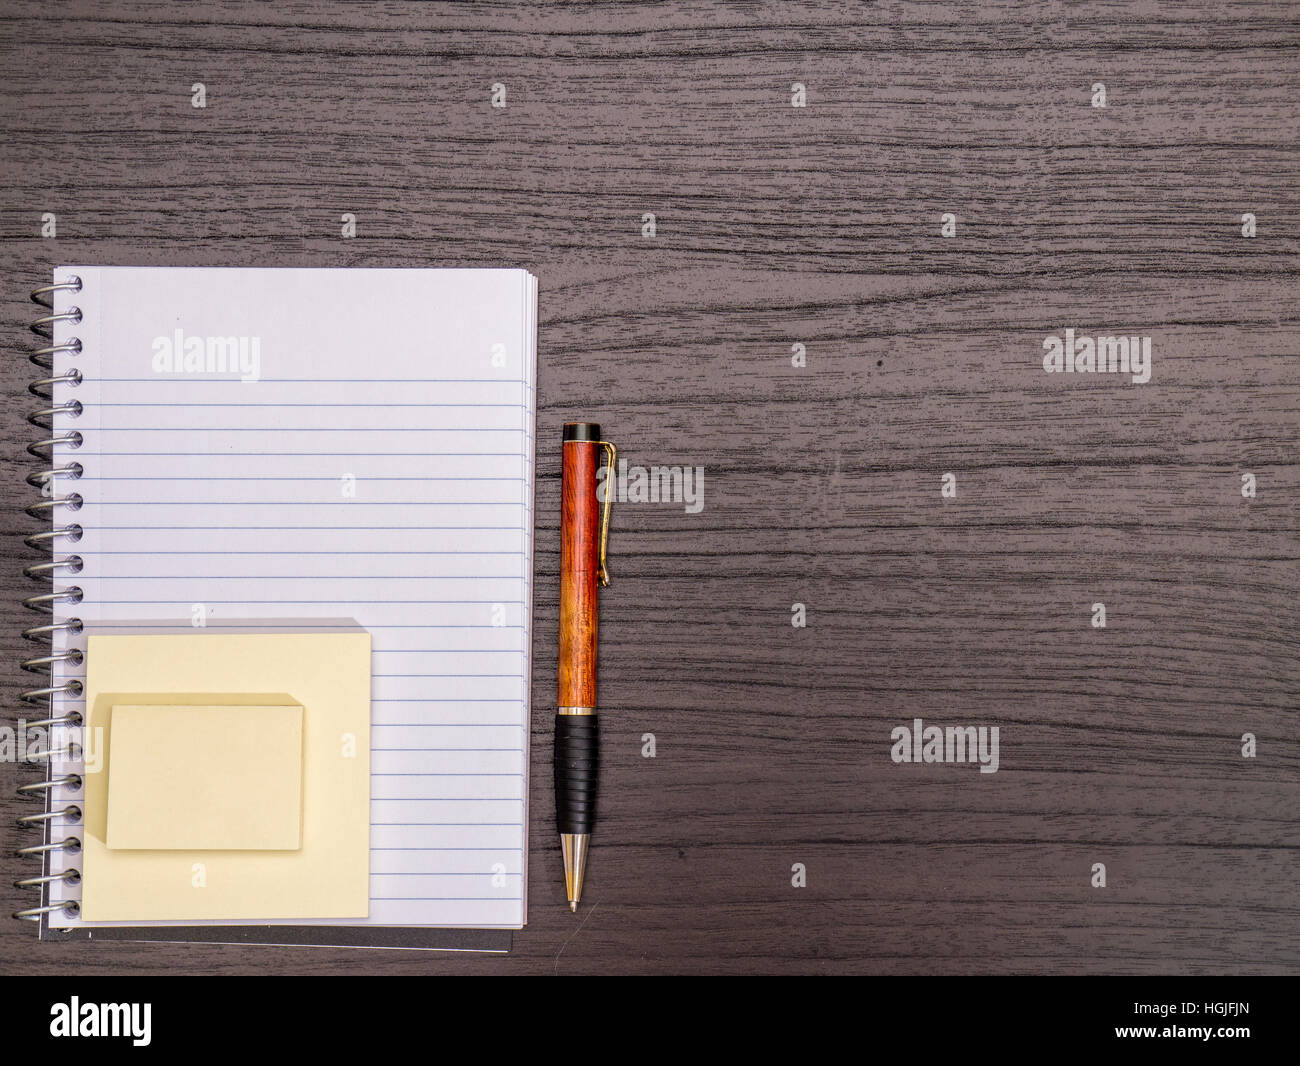 Scrivania, Notebook a spirale, note, la penna sulla scrivania Foto Stock